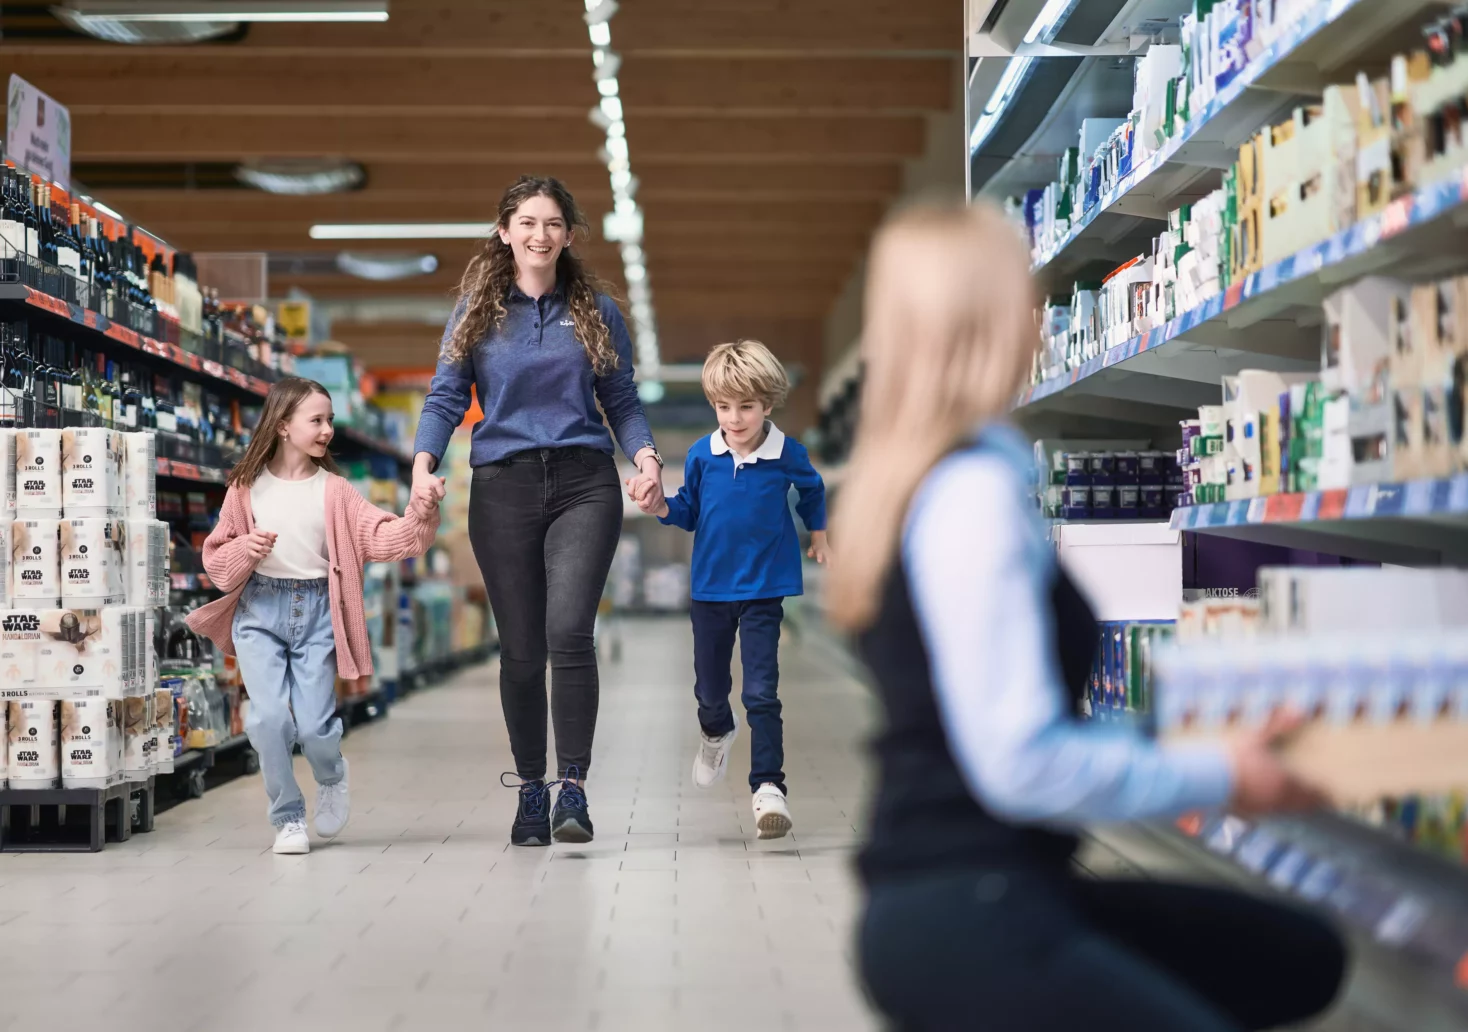 Foto auf 5min.at zeigt eine Lidl-Mitarbeiterin mit zwei Kindern an der Hand durch die Einkaufsgänge gehen.